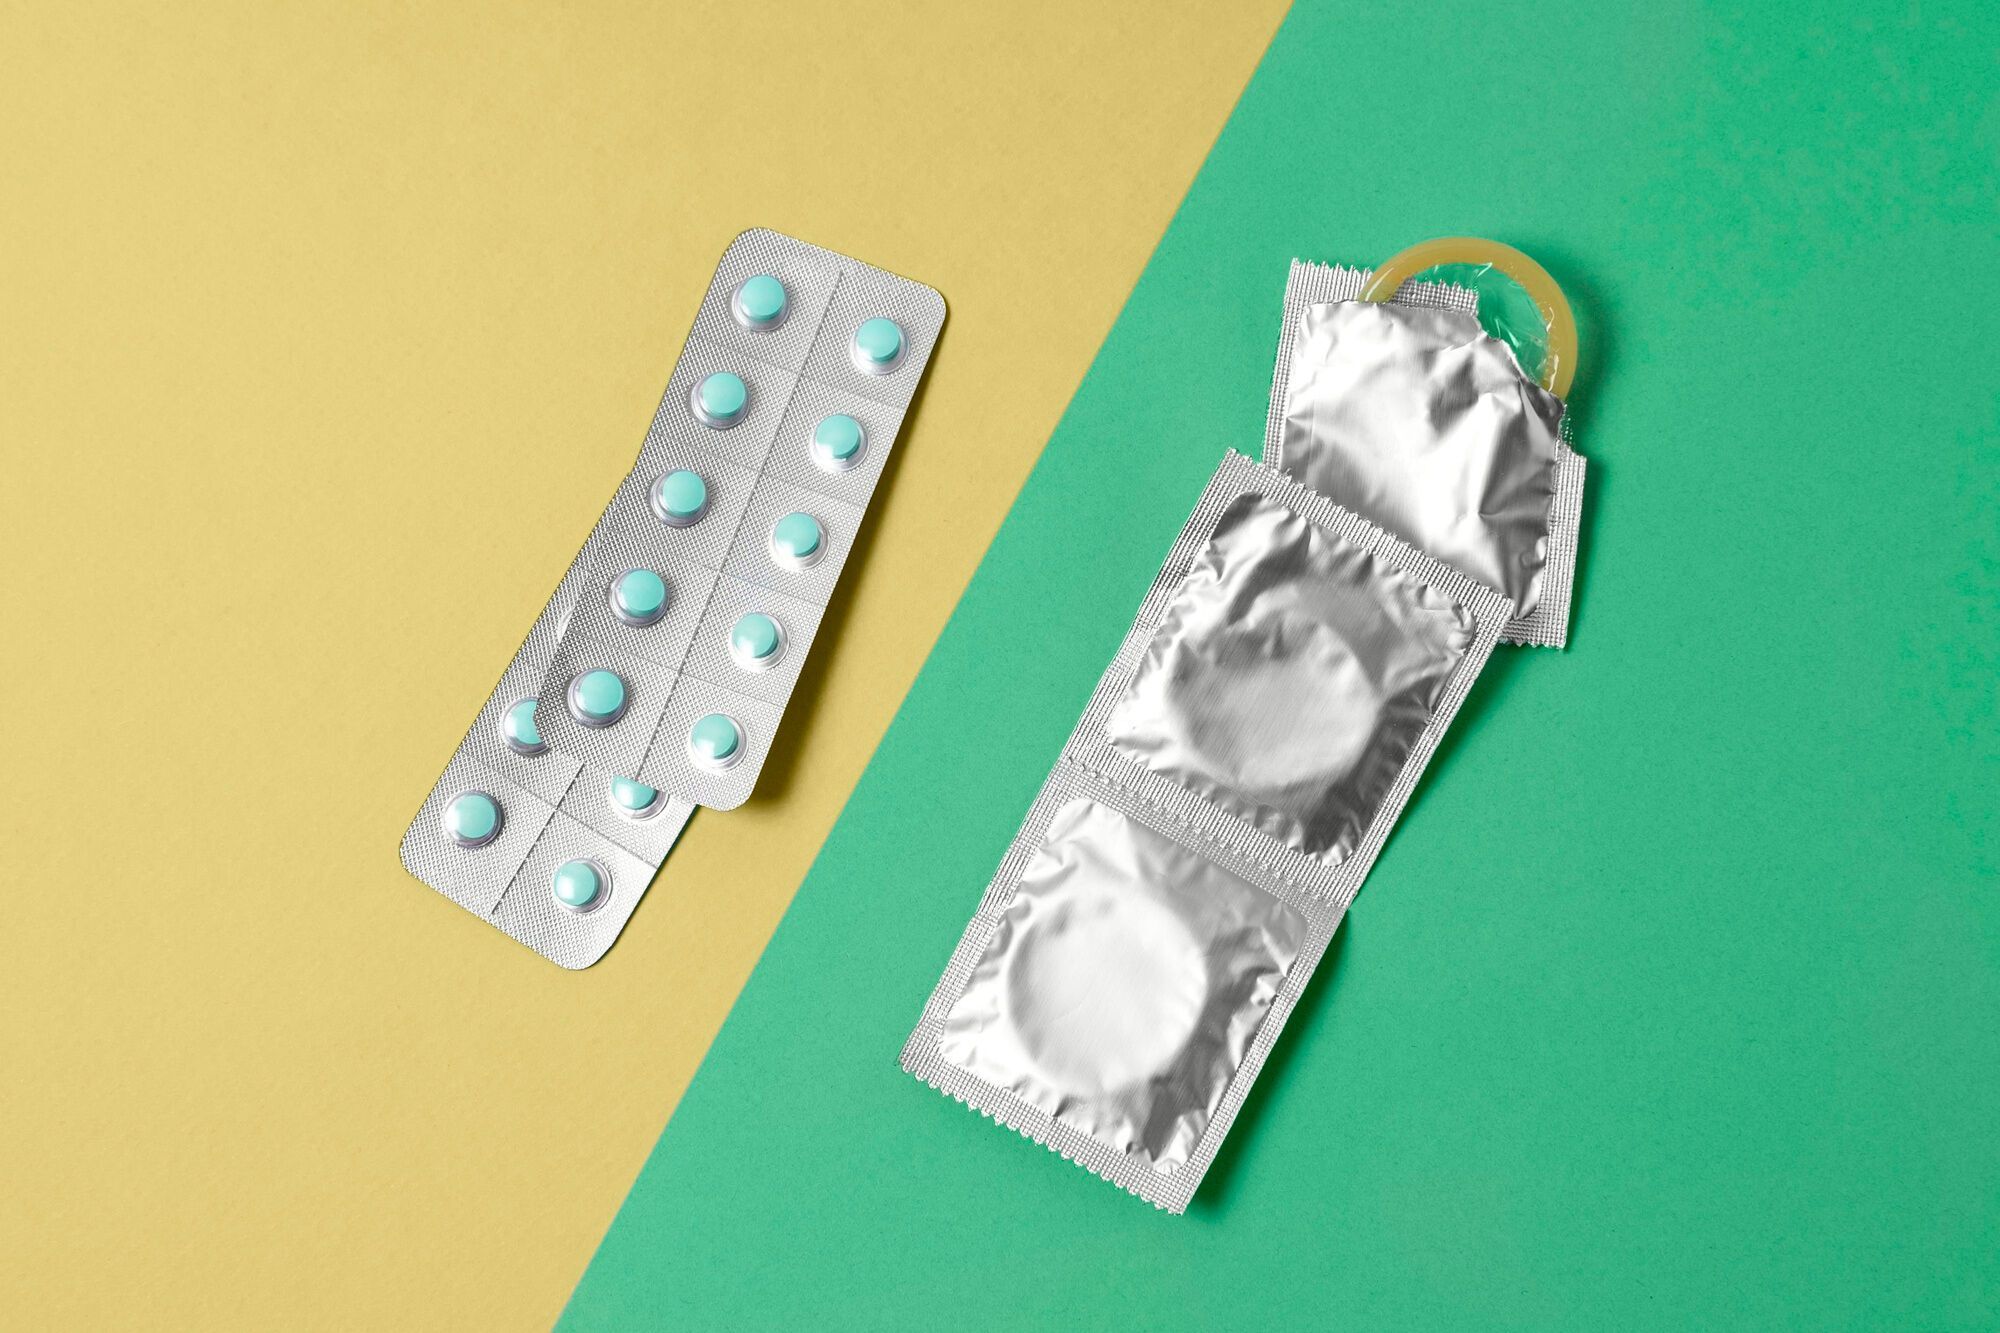 В финской школе у медсестры можно взять таблетку экстренной контрацепции или записаться на аборт